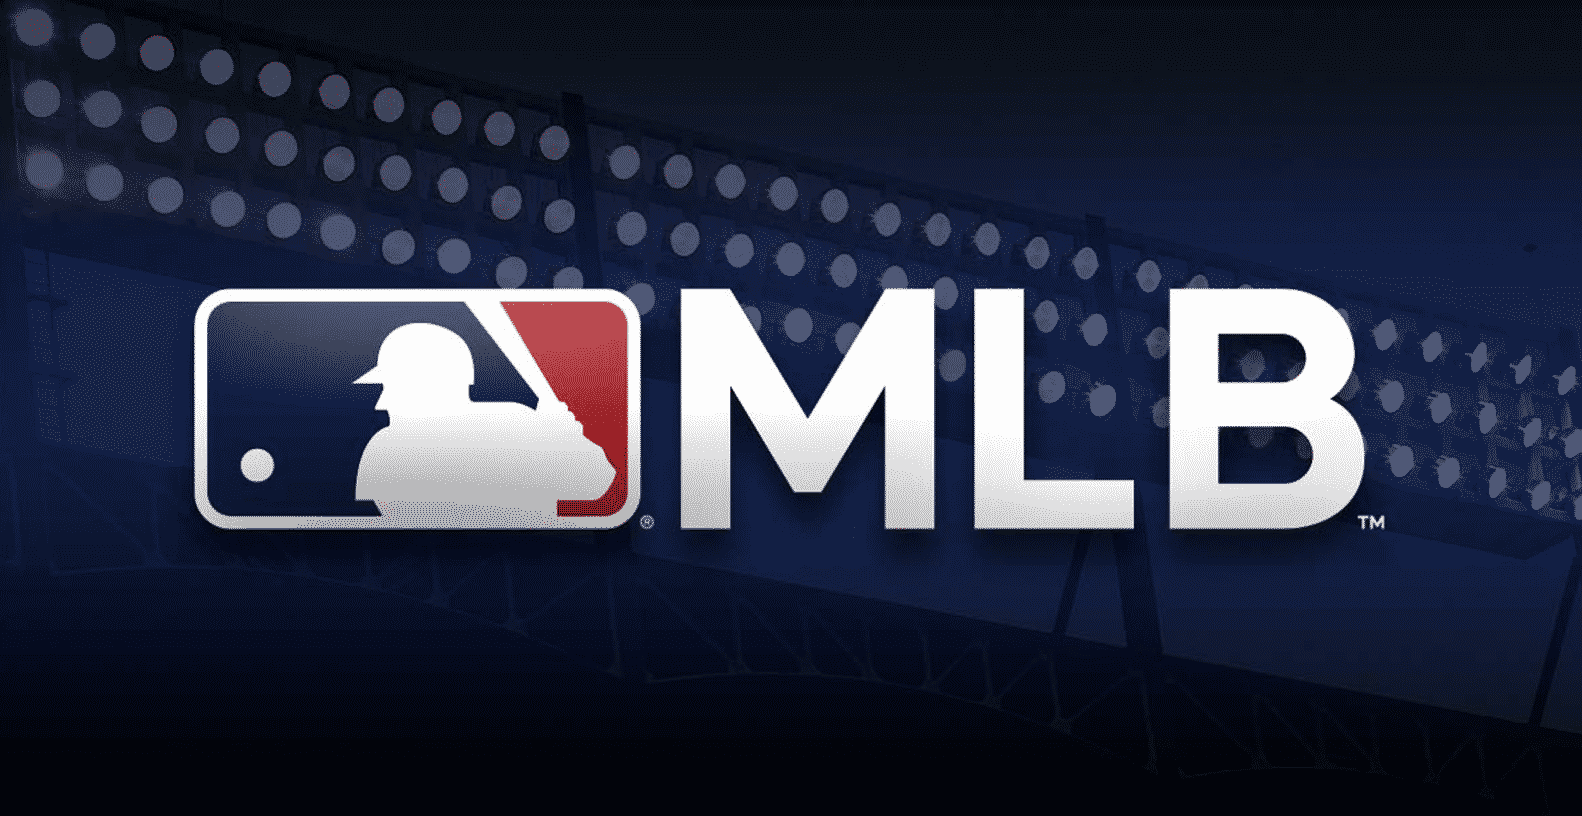 MLB App